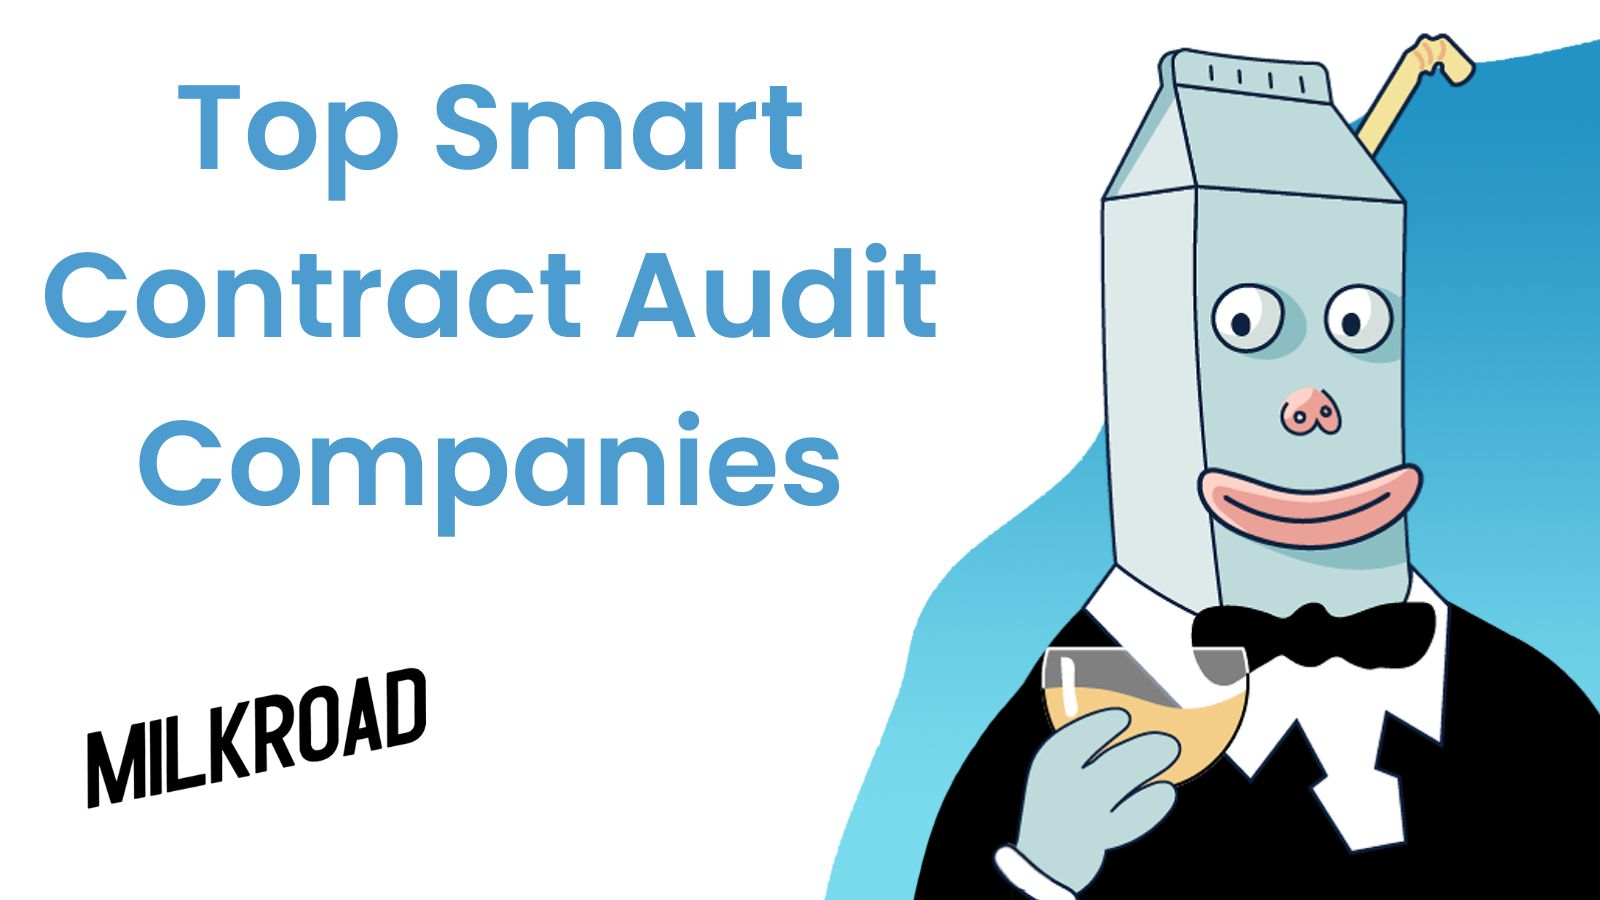 Top Smart Contract Audit Companies